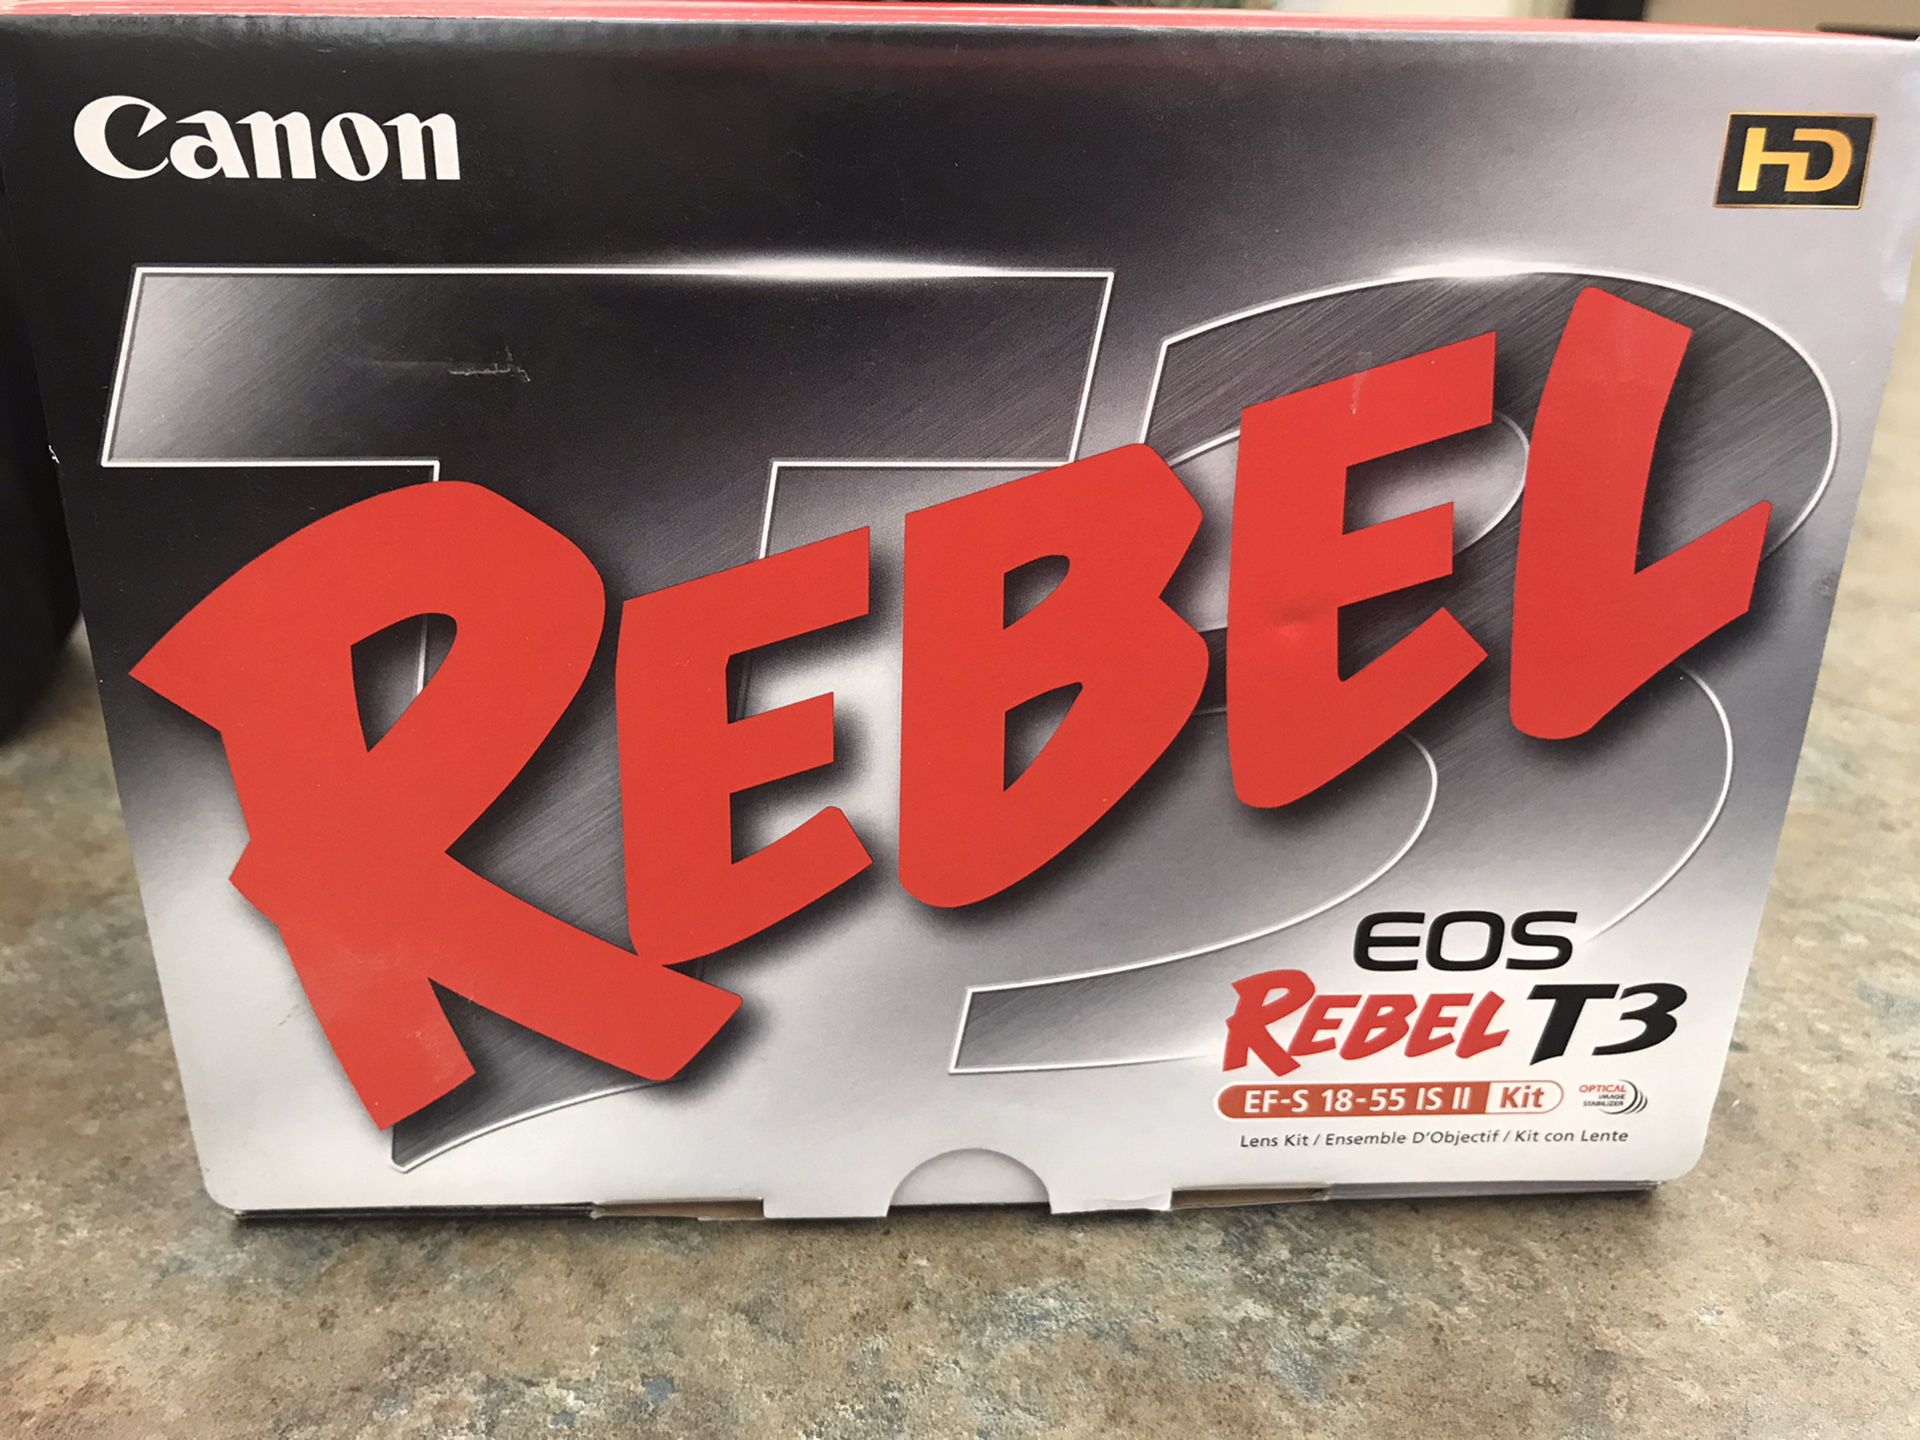 Canon Digital Camera - Rebel T3